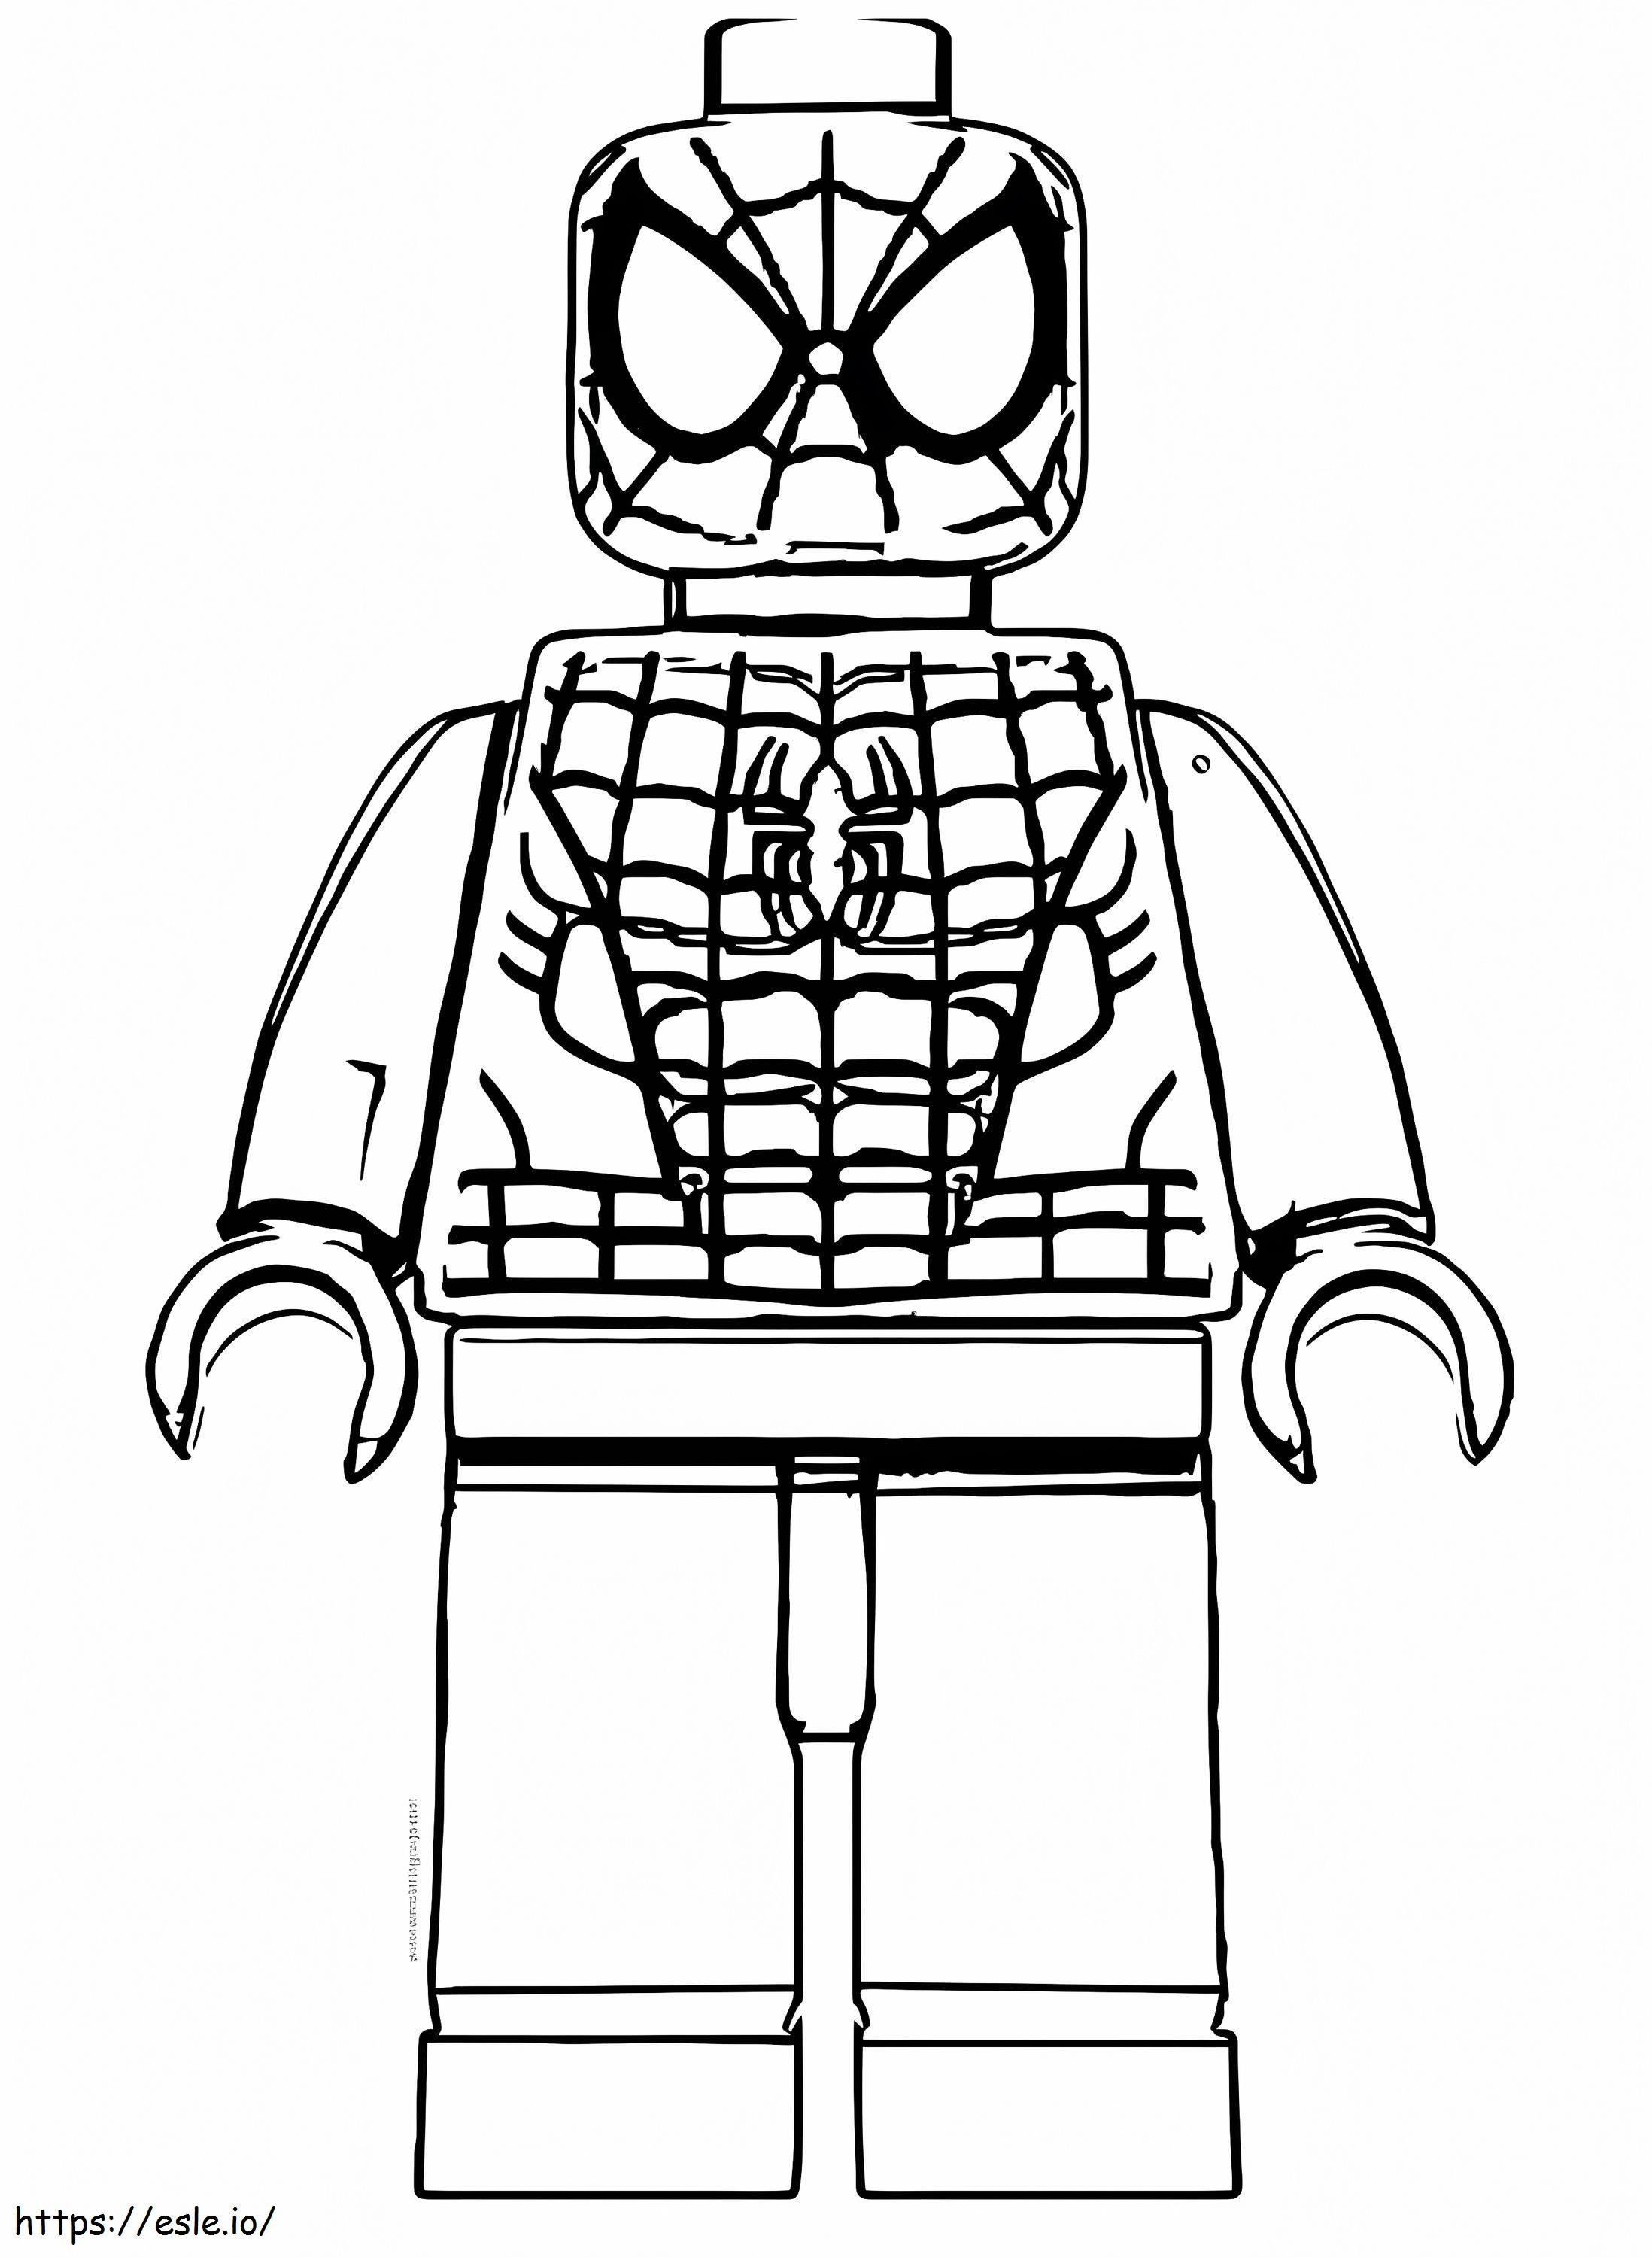 Desenho de Lego Homem-Aranha para colorir